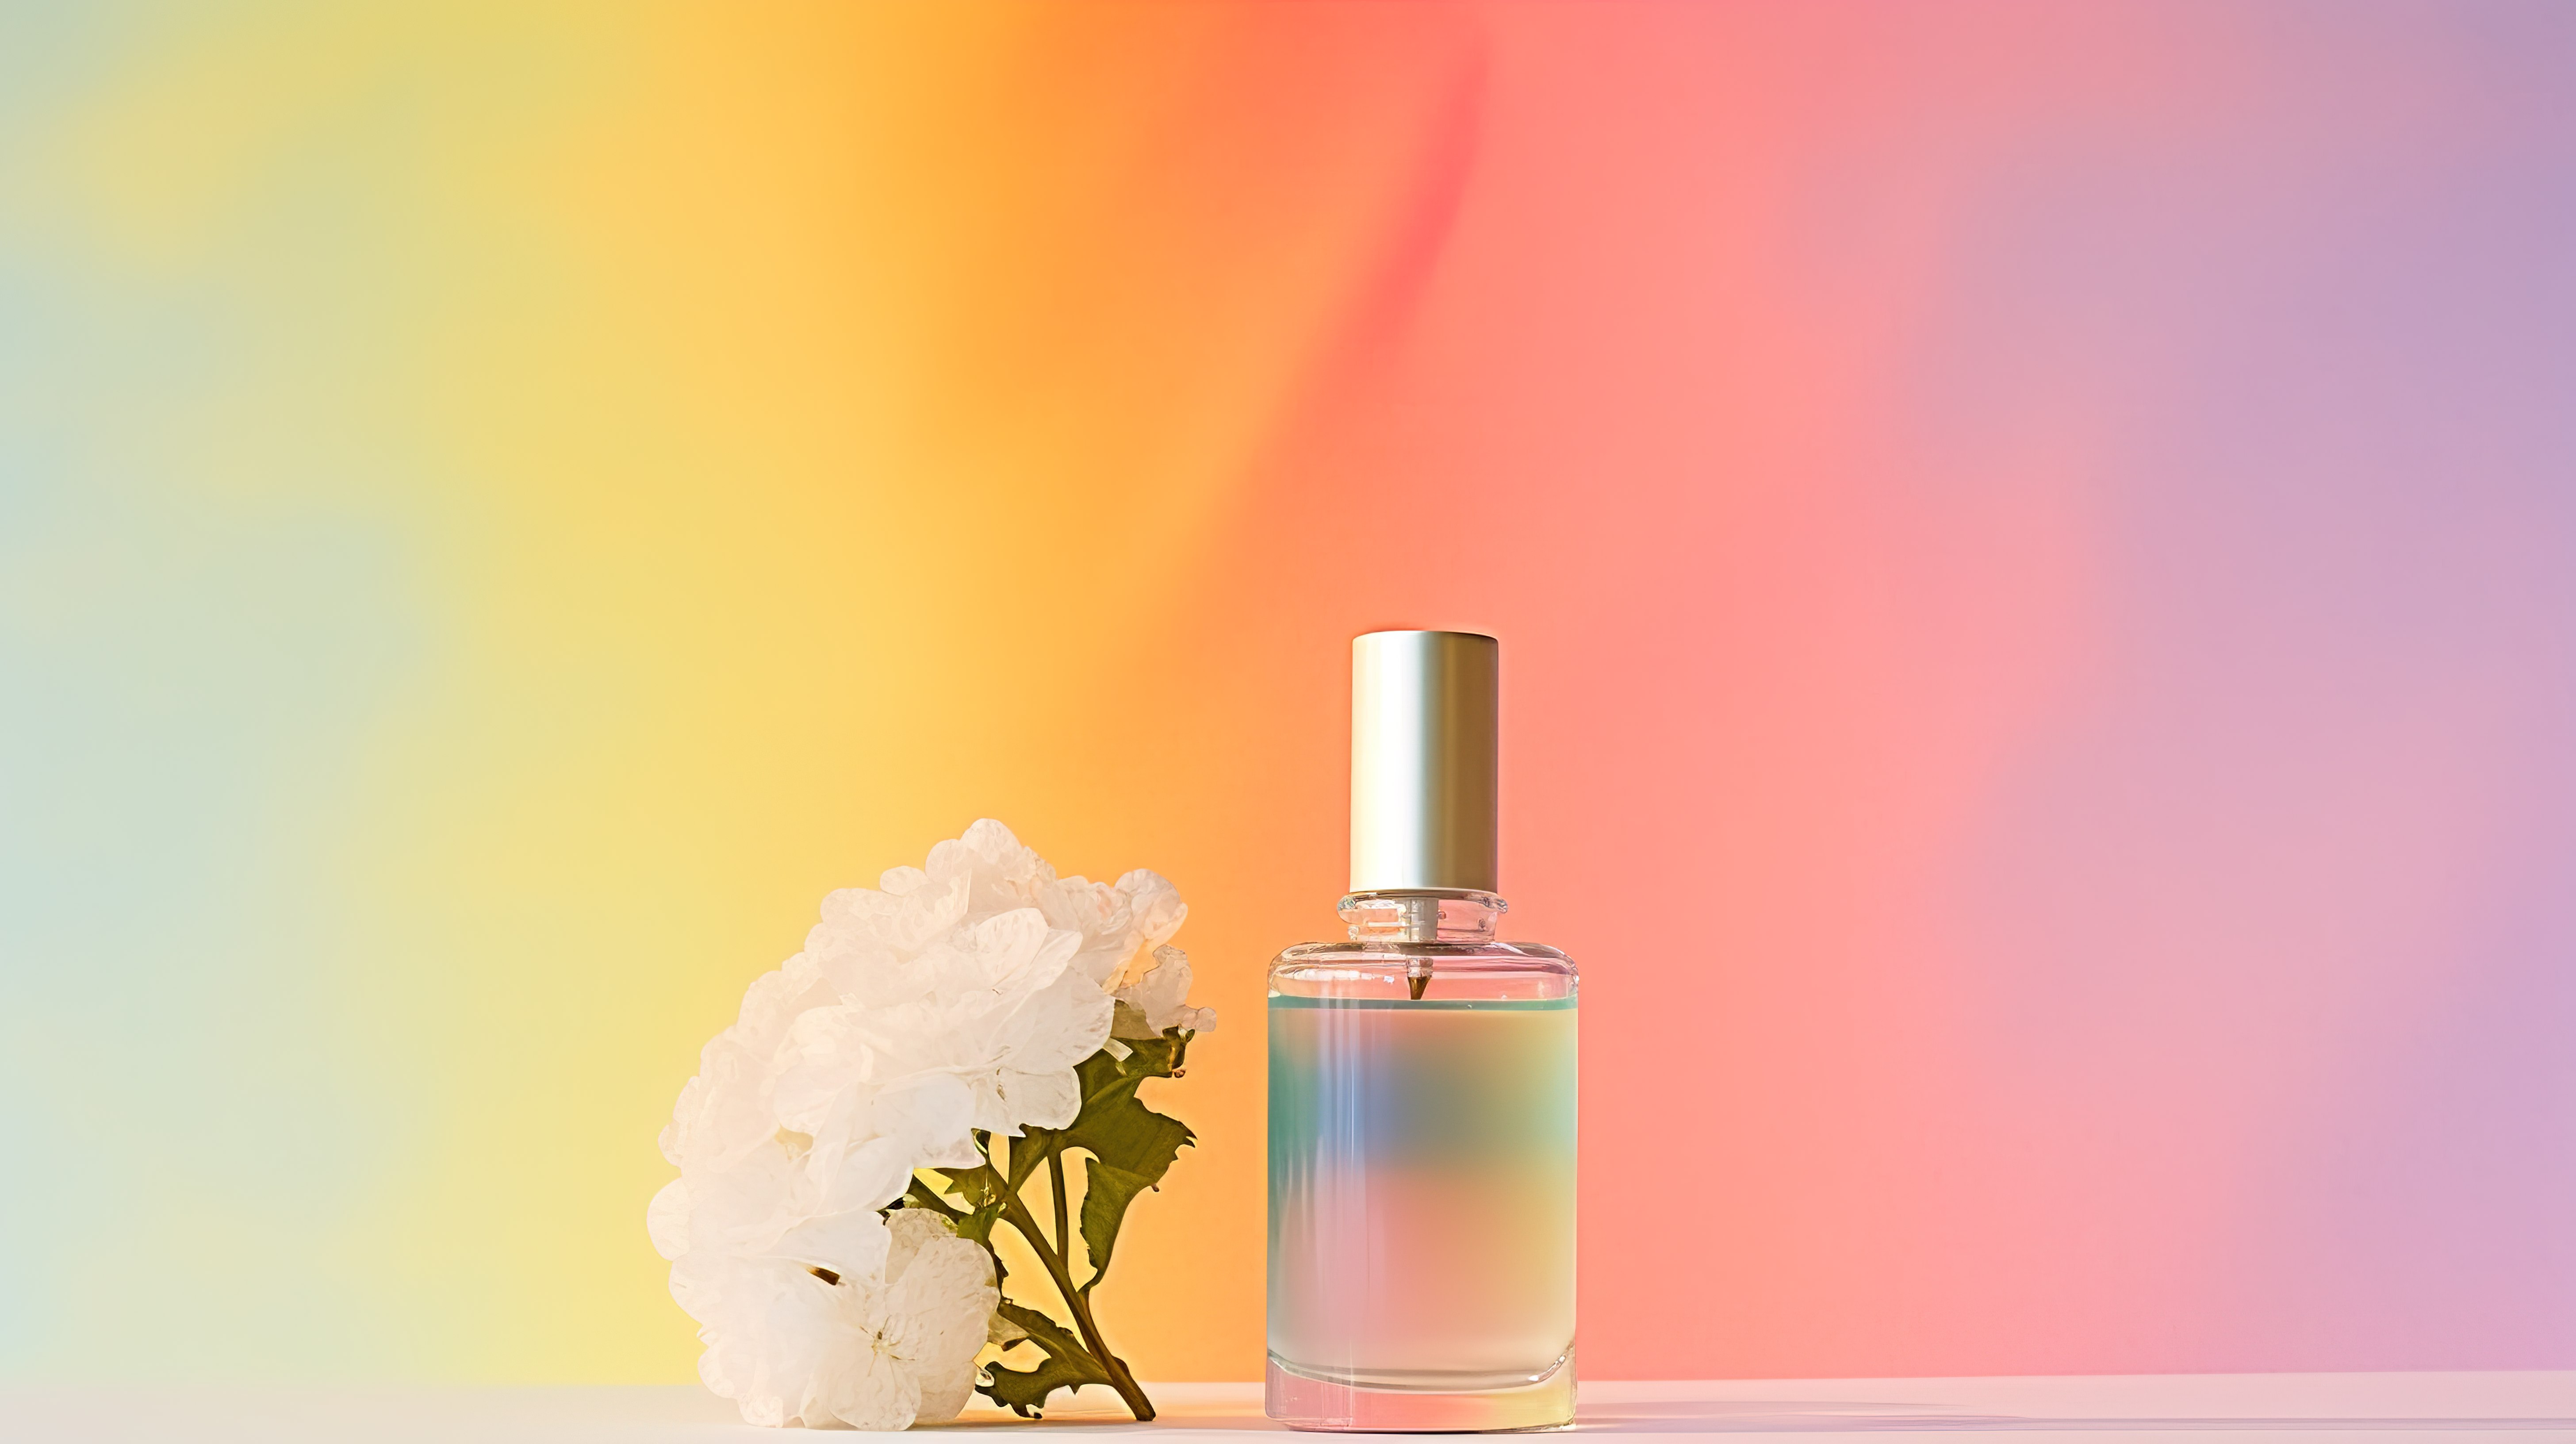 一瓶伊夫特鲁多的白色香水模拟艺术图片